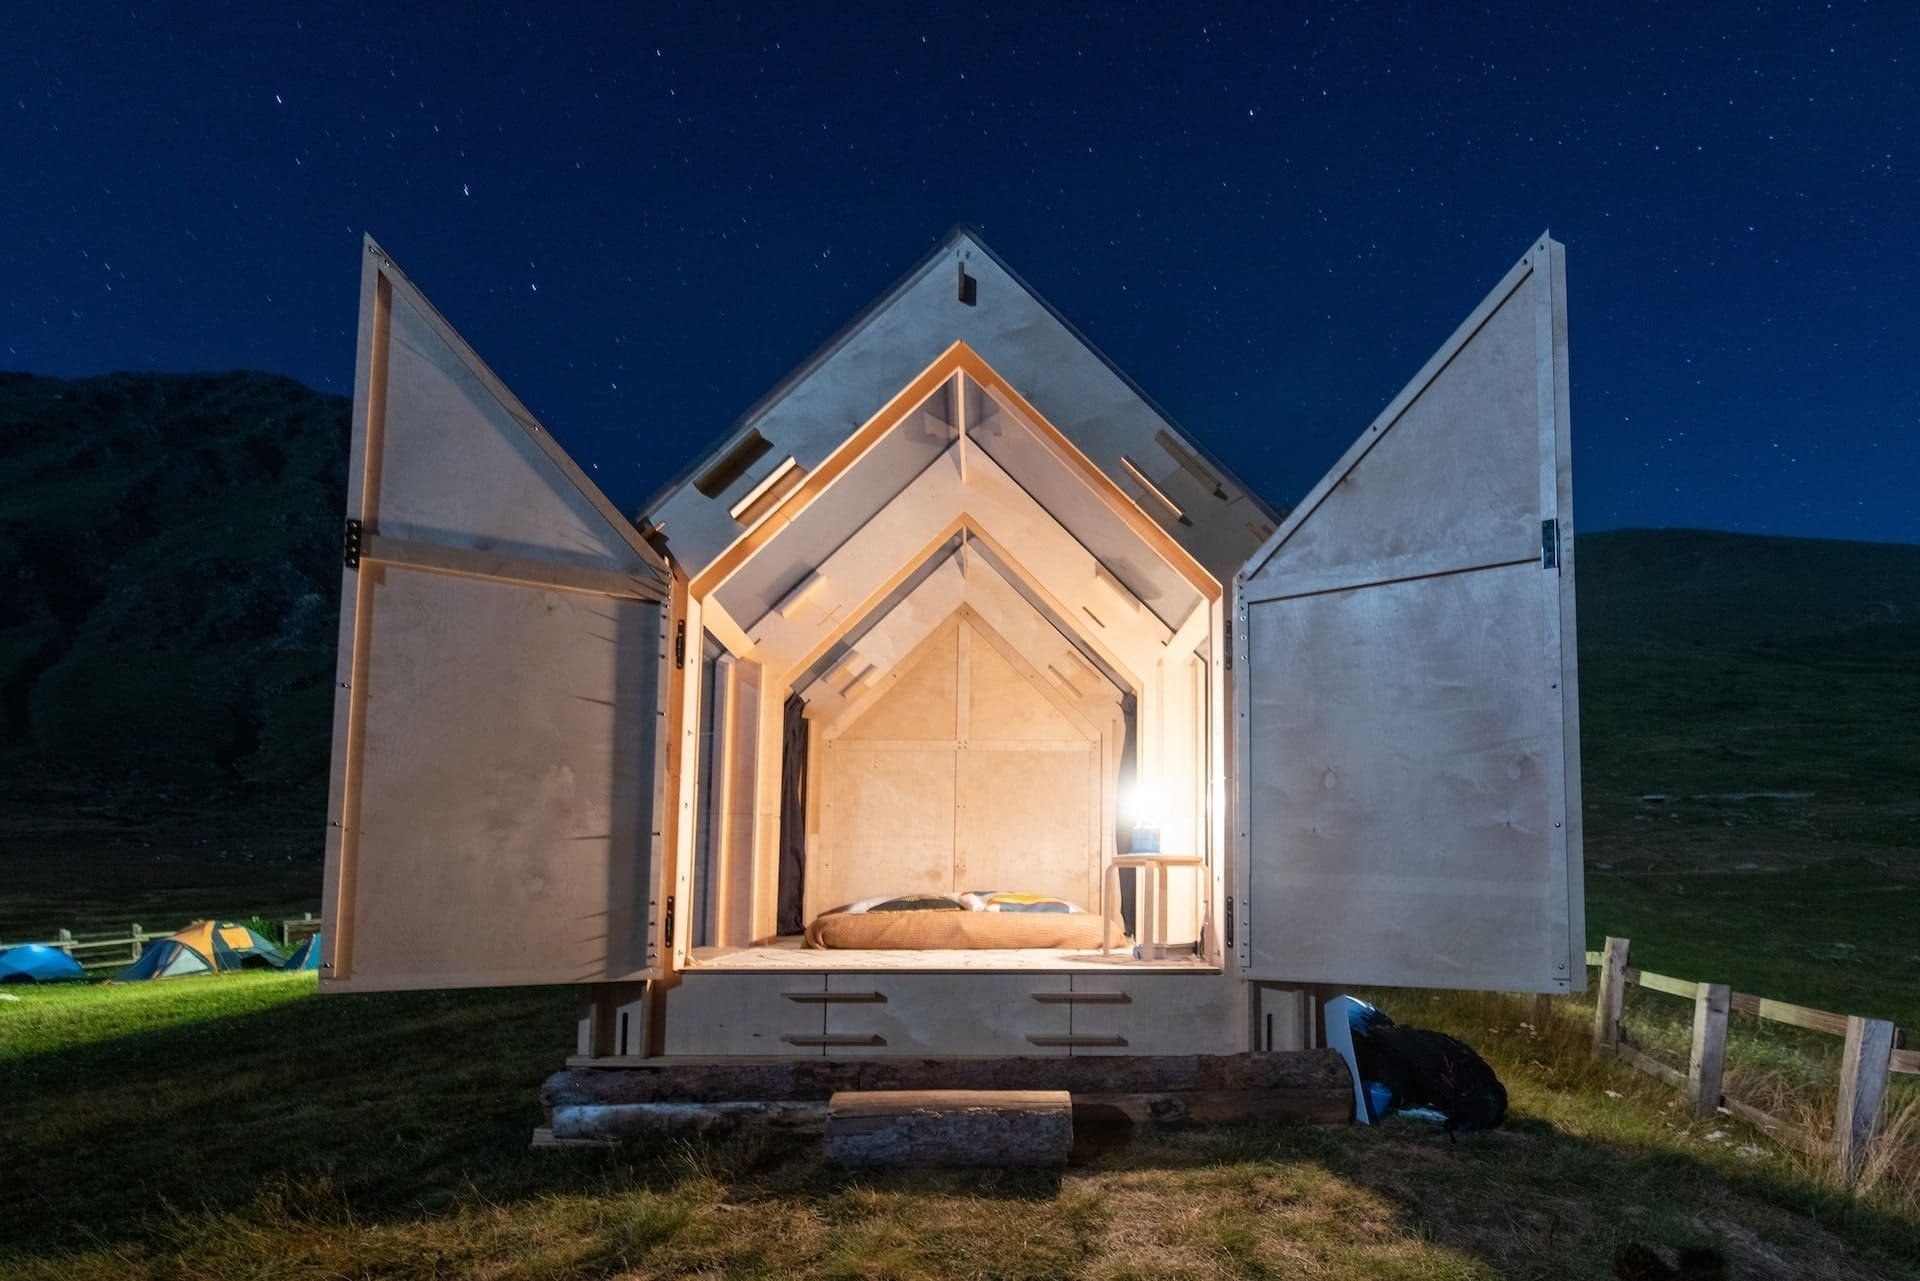 Prosklená chata pod hvězdným nebem italských Alp